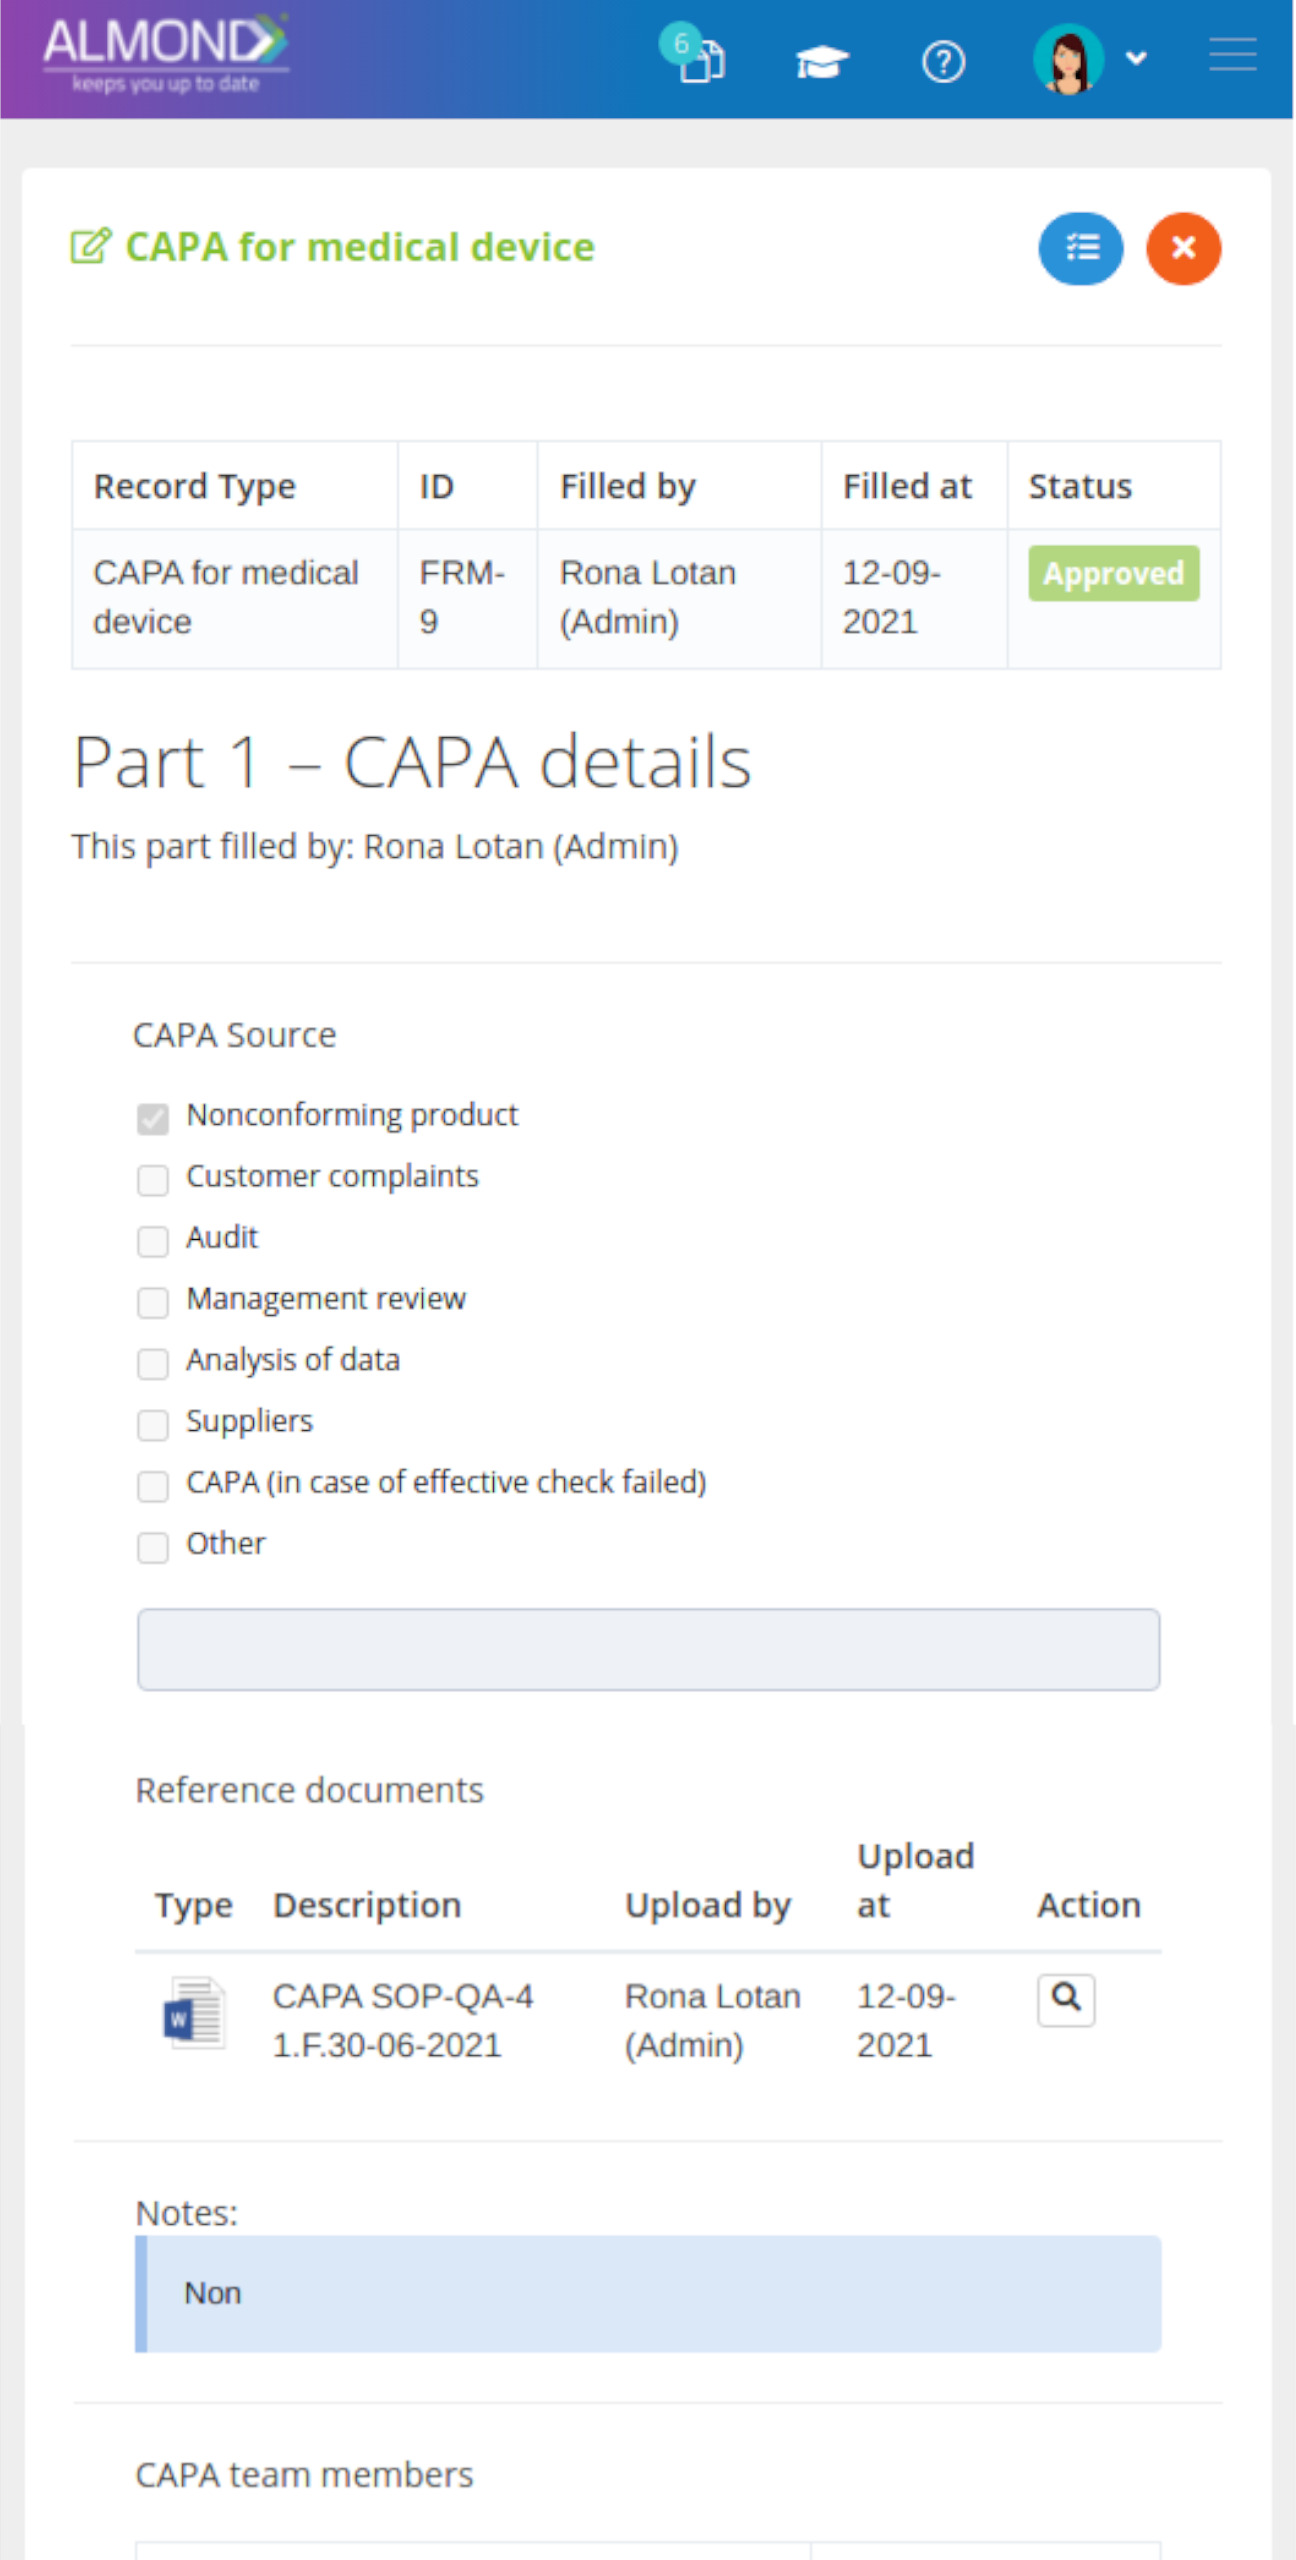 CAPA's management